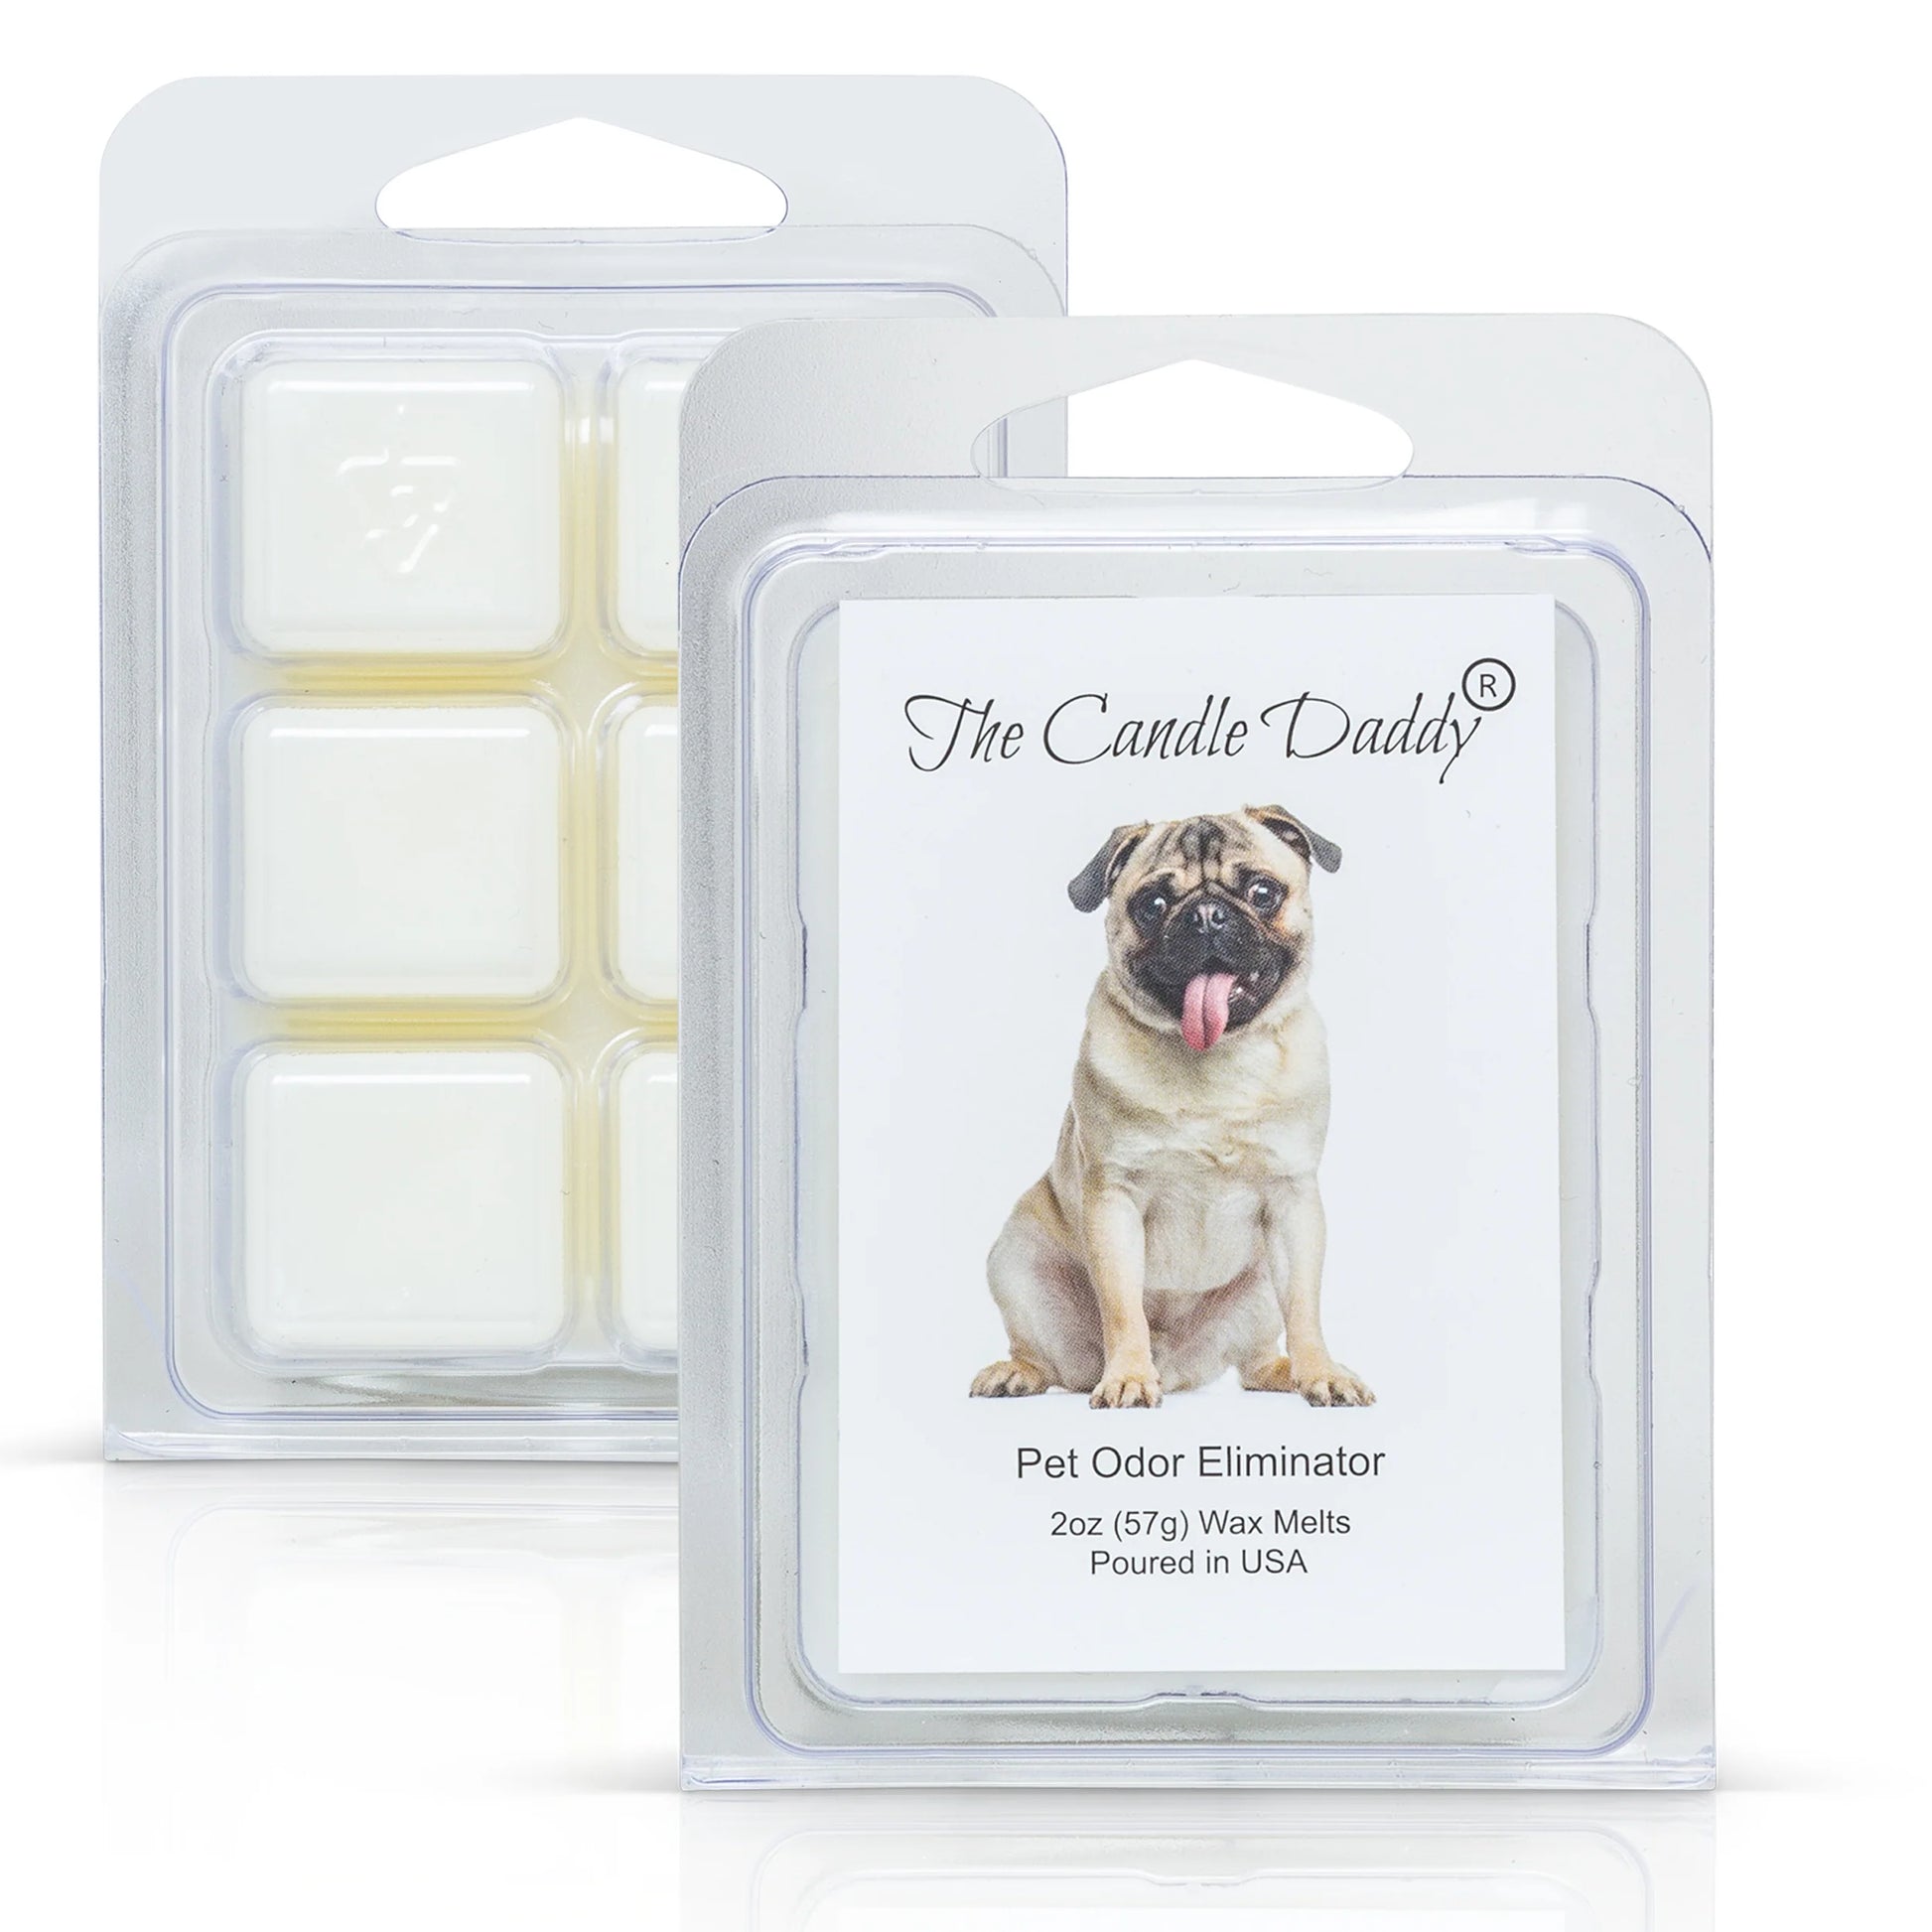 Vanilla Cream Wax Melt - World's Safest Candles - Parrot Safe Candles